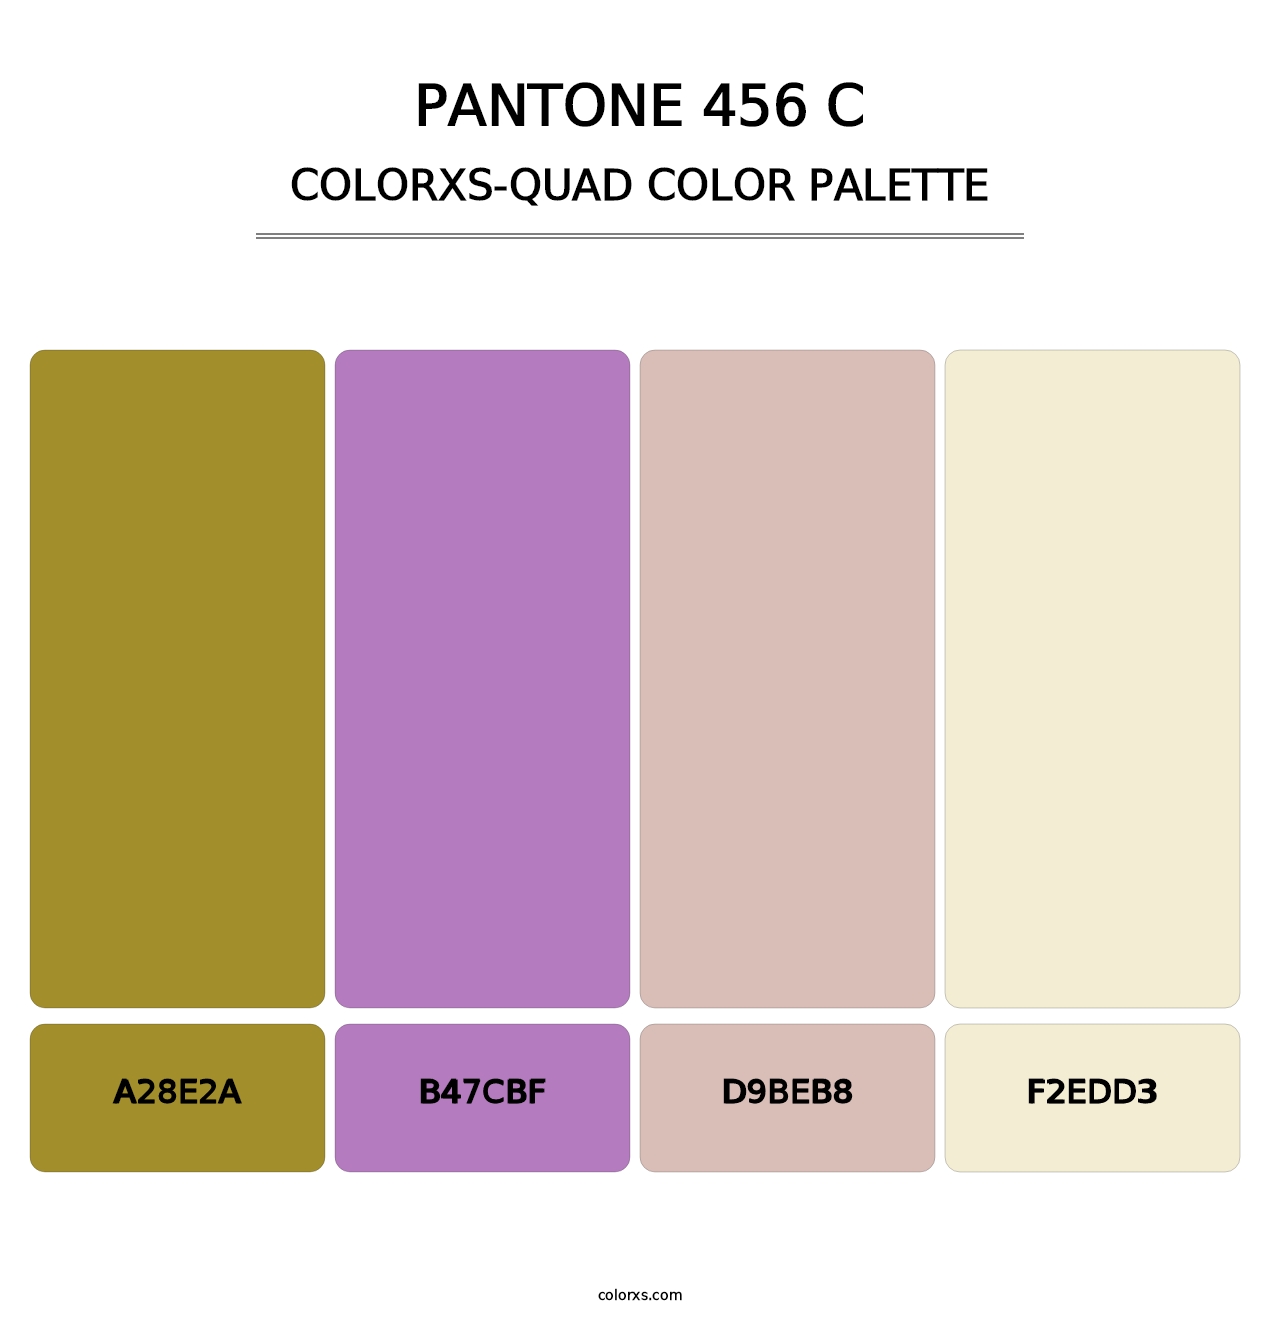 PANTONE 456 C - Colorxs Quad Palette